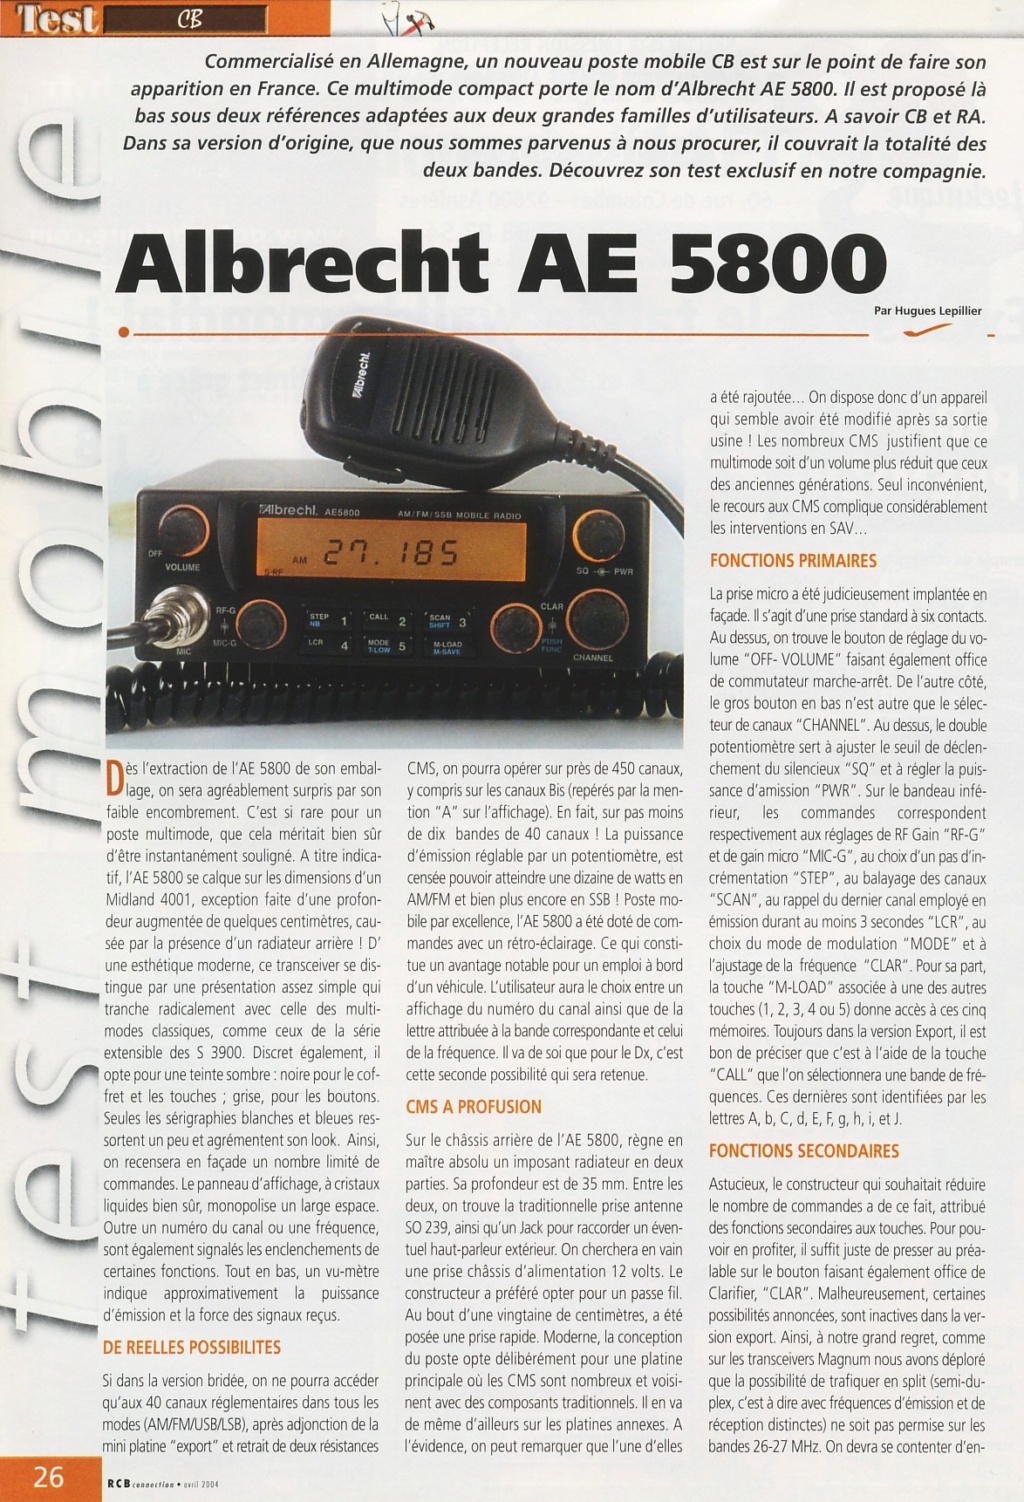 EU - Albrecht AE 5800 EU (Mobile) Ae580010